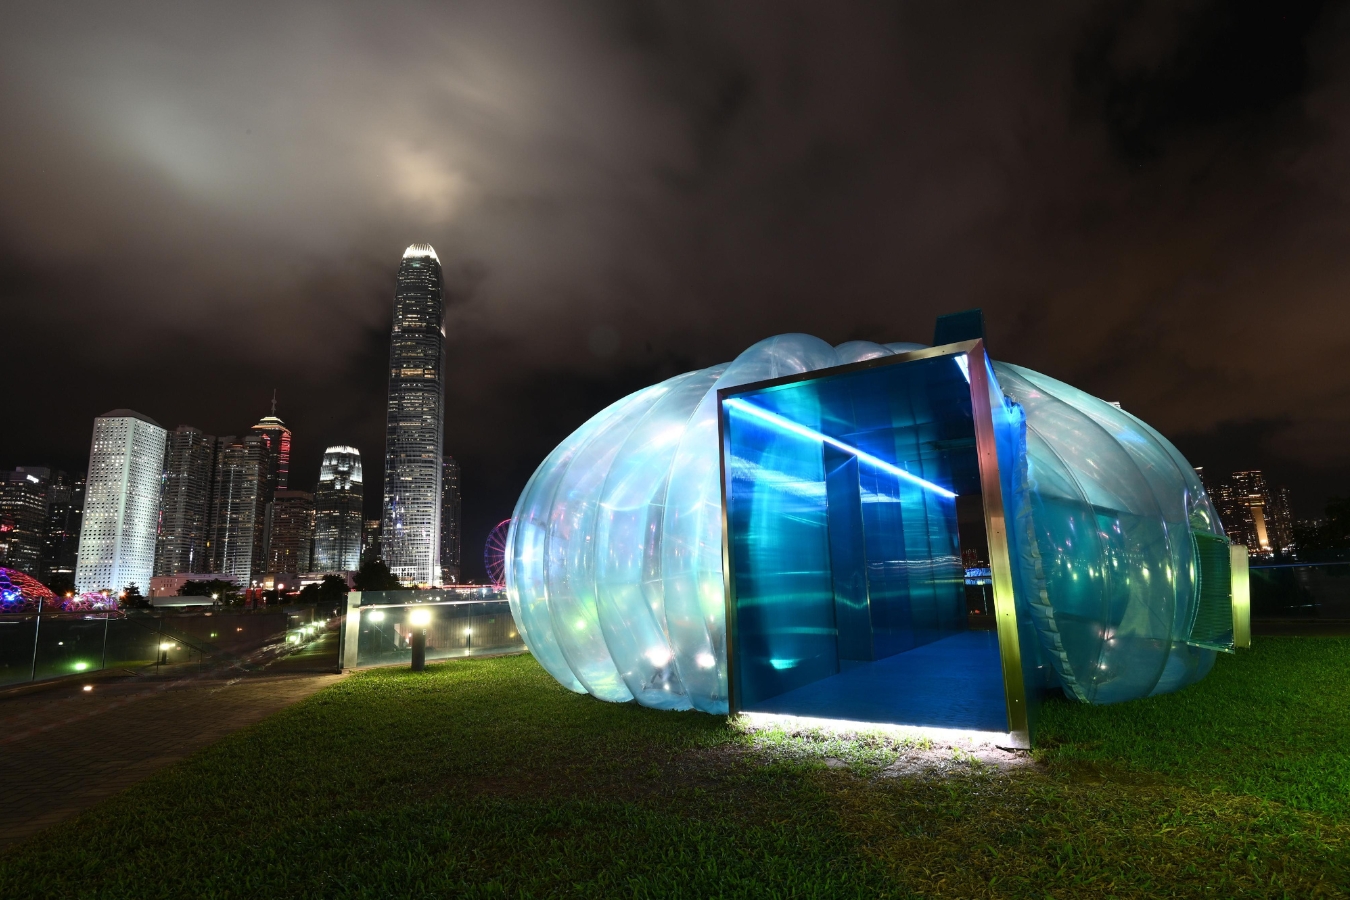 water capsule submarine art@harbour 2022 hong kong